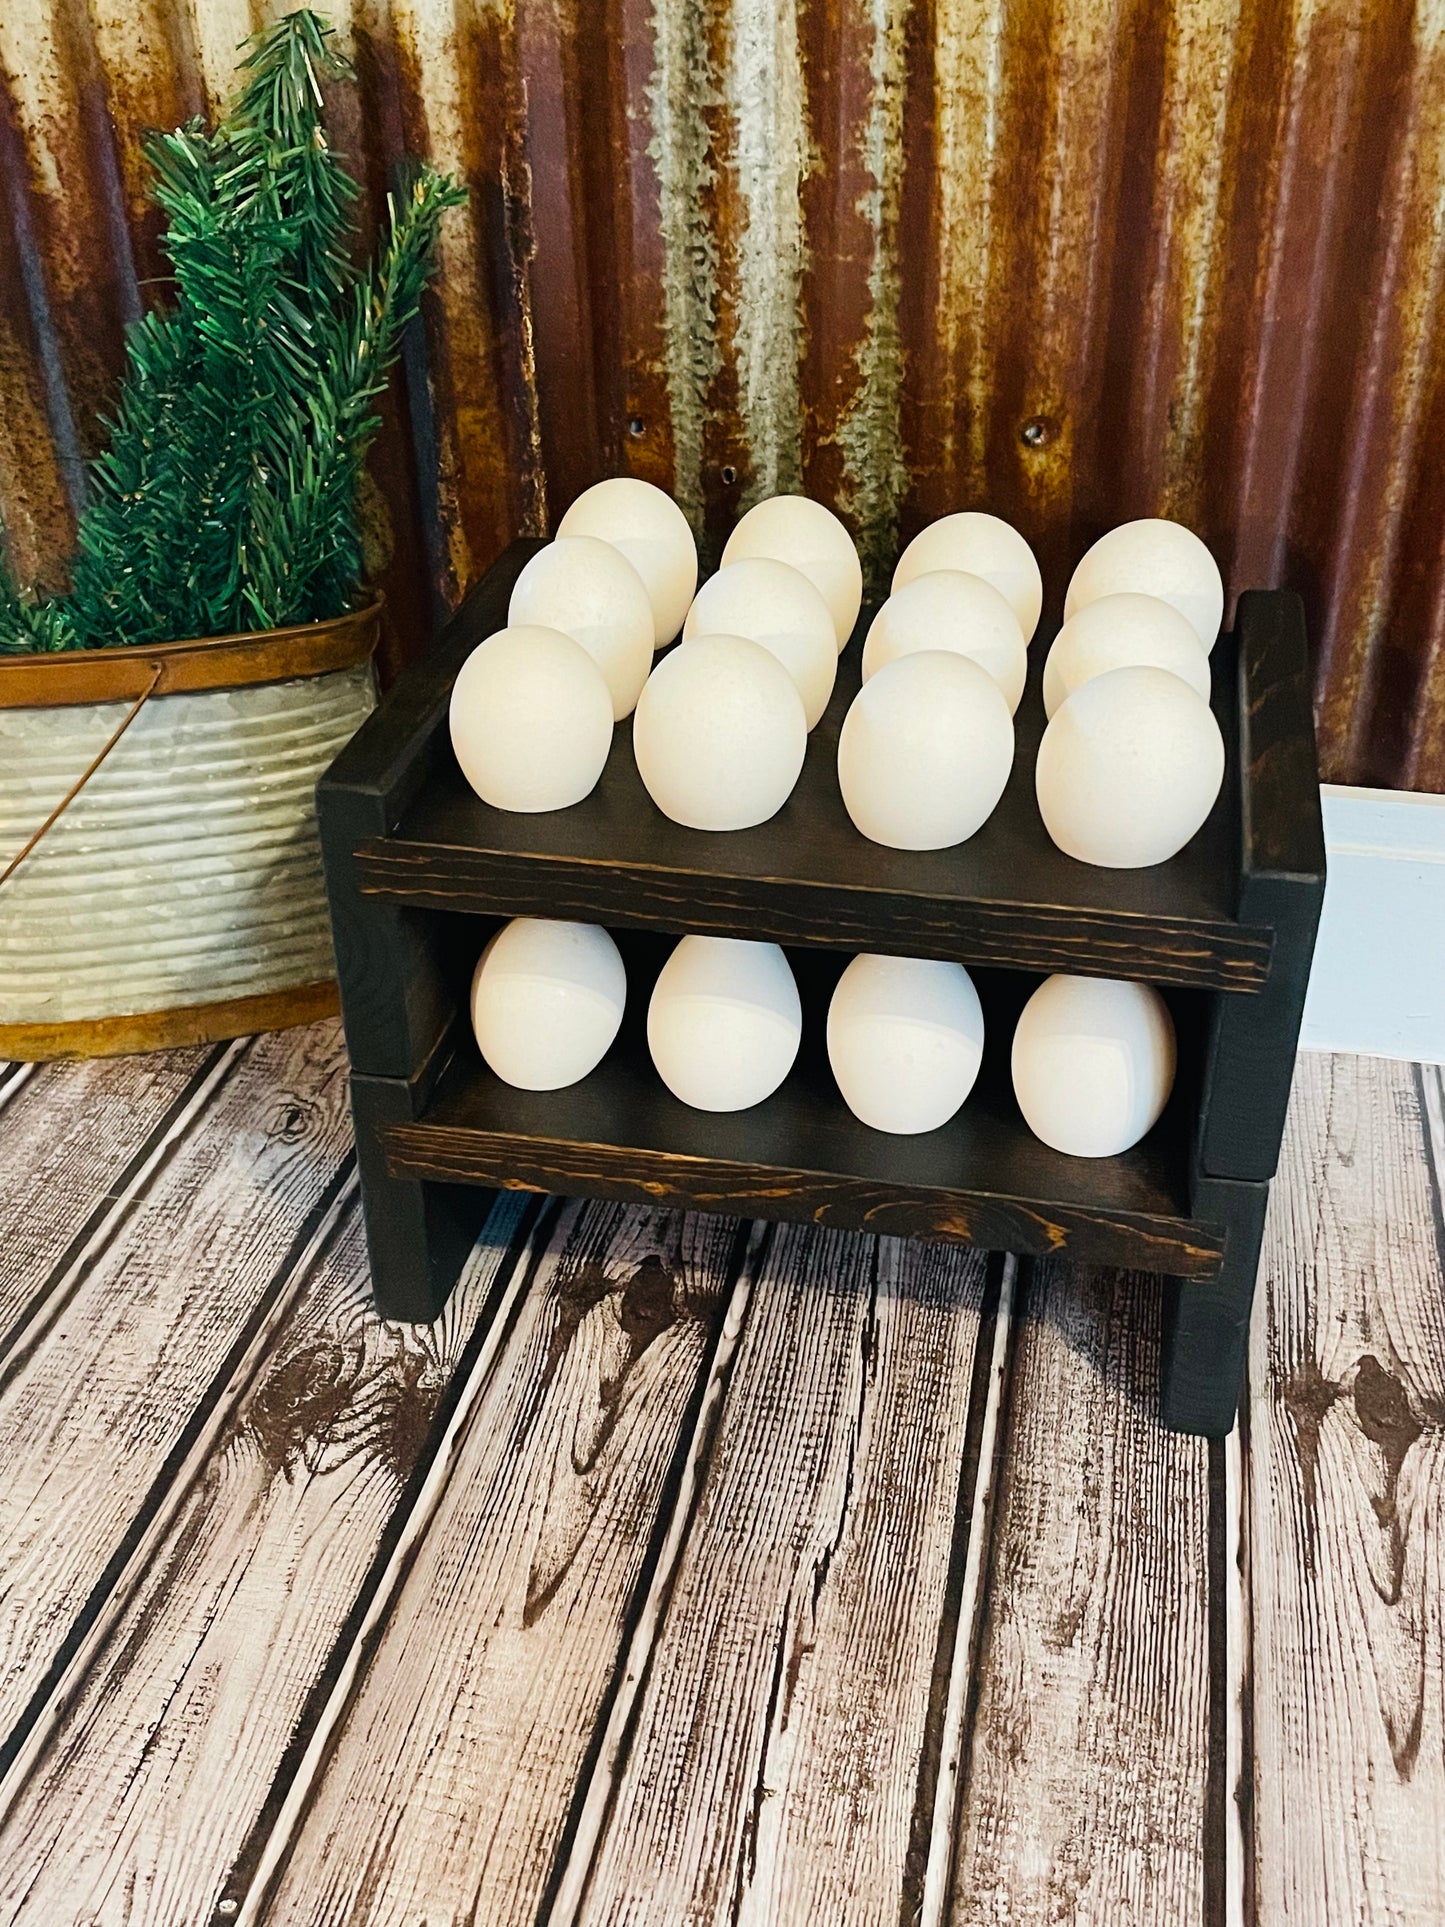 Farmhouse Stackable Wood Egg Holder L Egg Storage L Fresh Egg Storage L  Wooden Egg Holder L Wooden Egg Rack L Wood Egg Carton L Egg Tray 